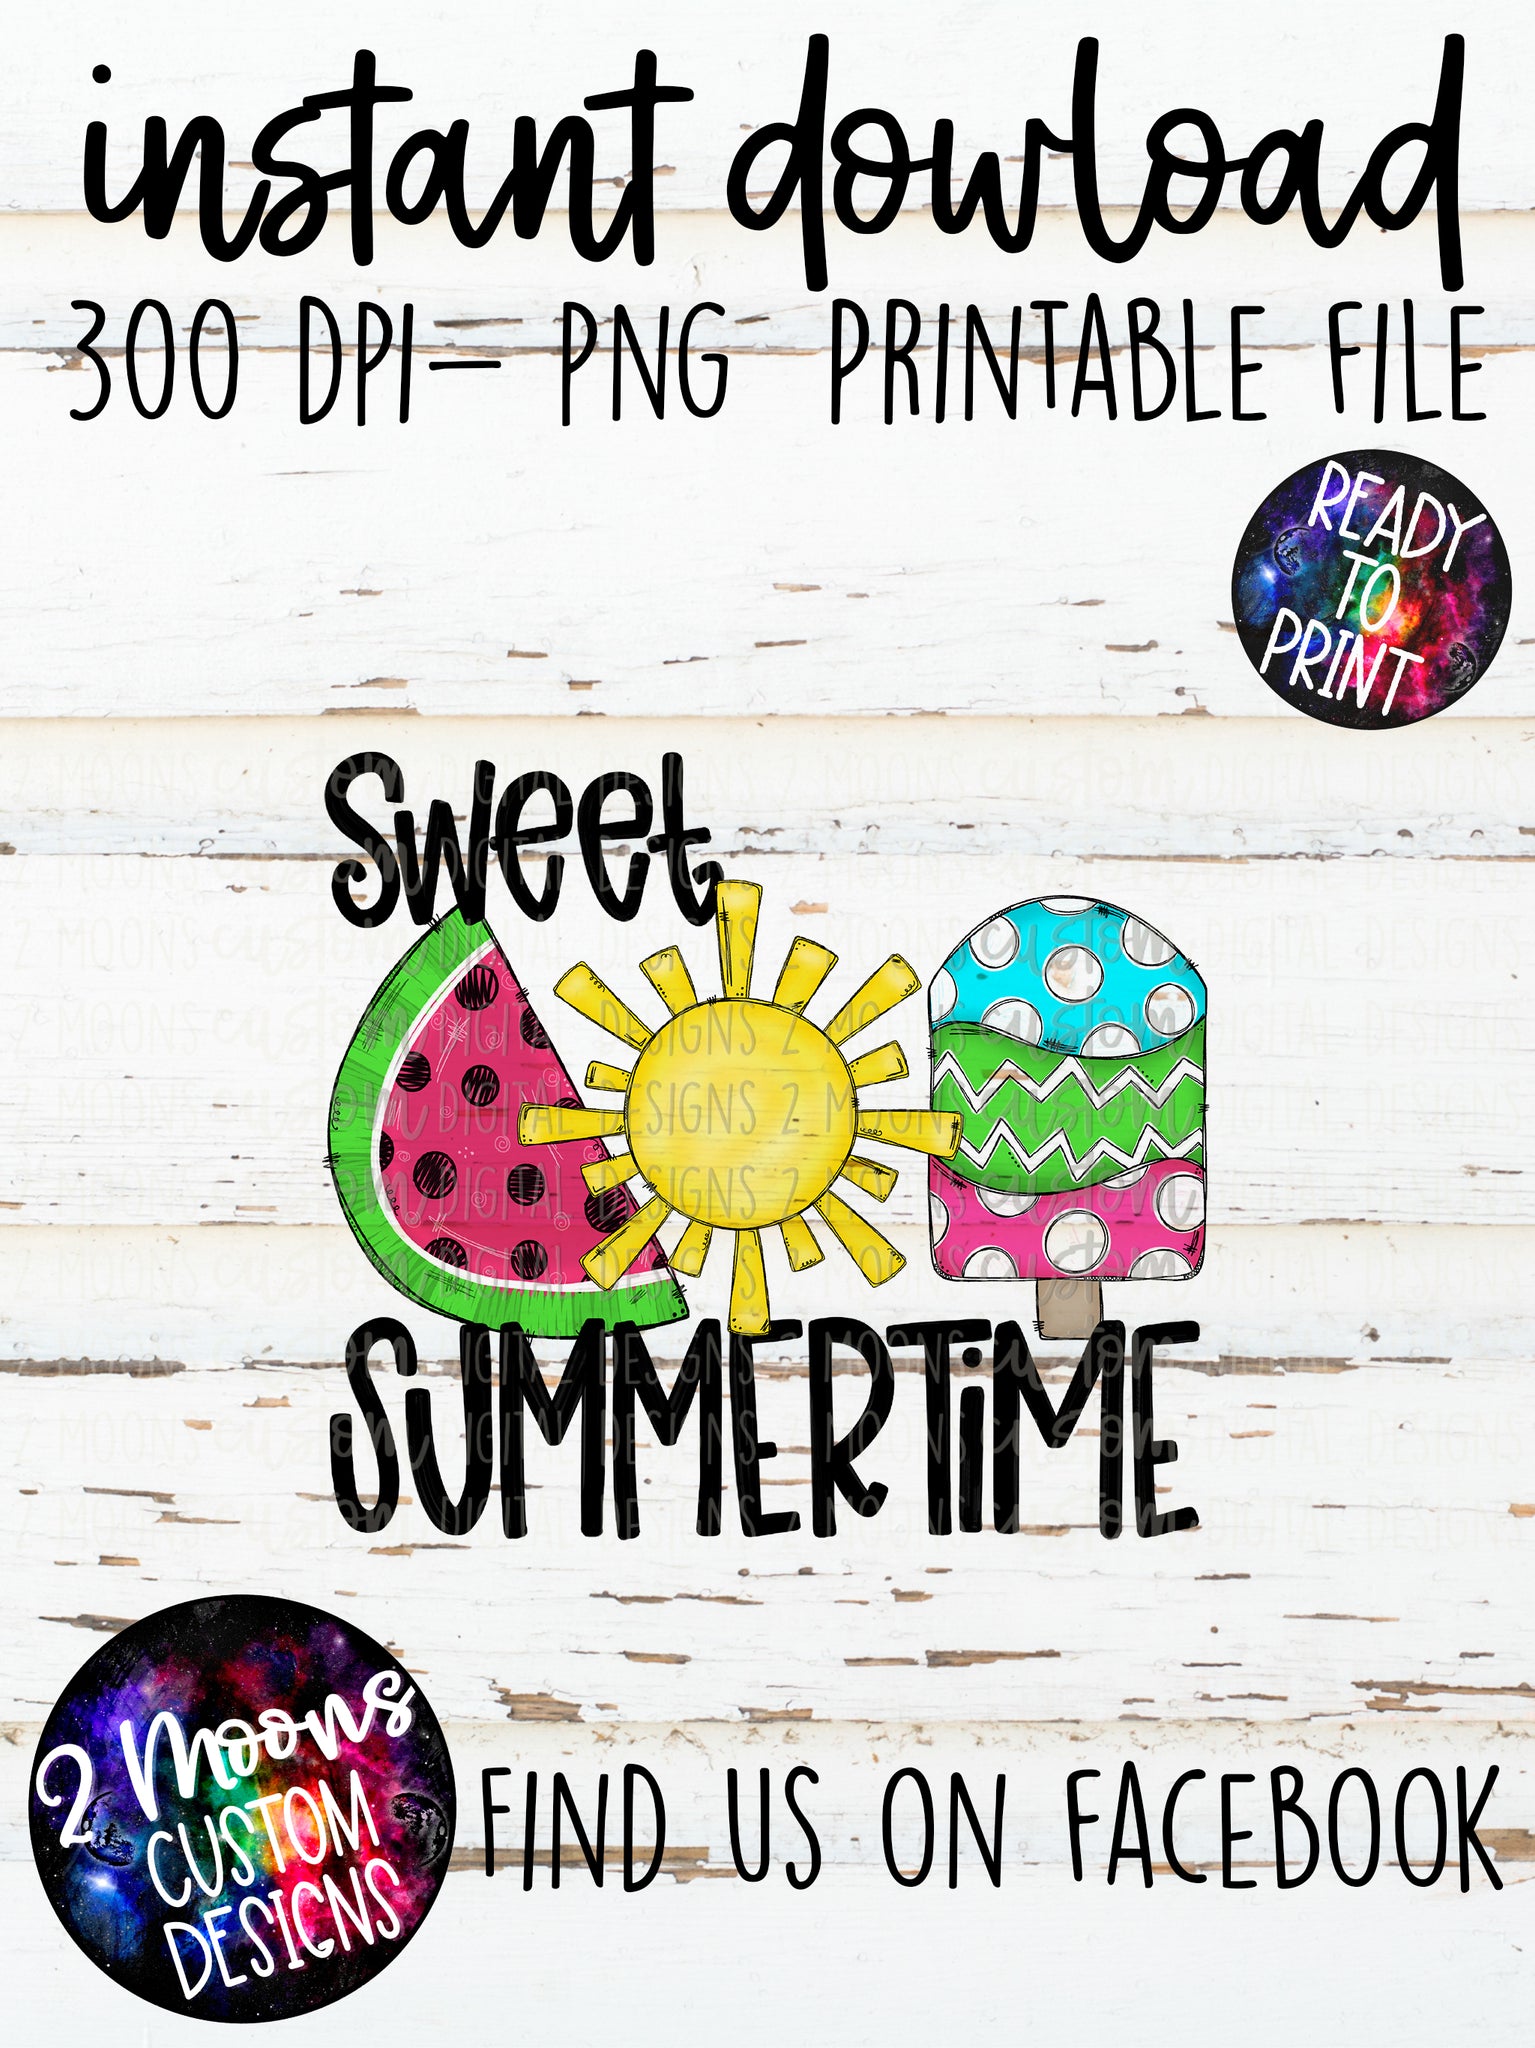 Sweet Summertime- Doodle Design- Handlettered